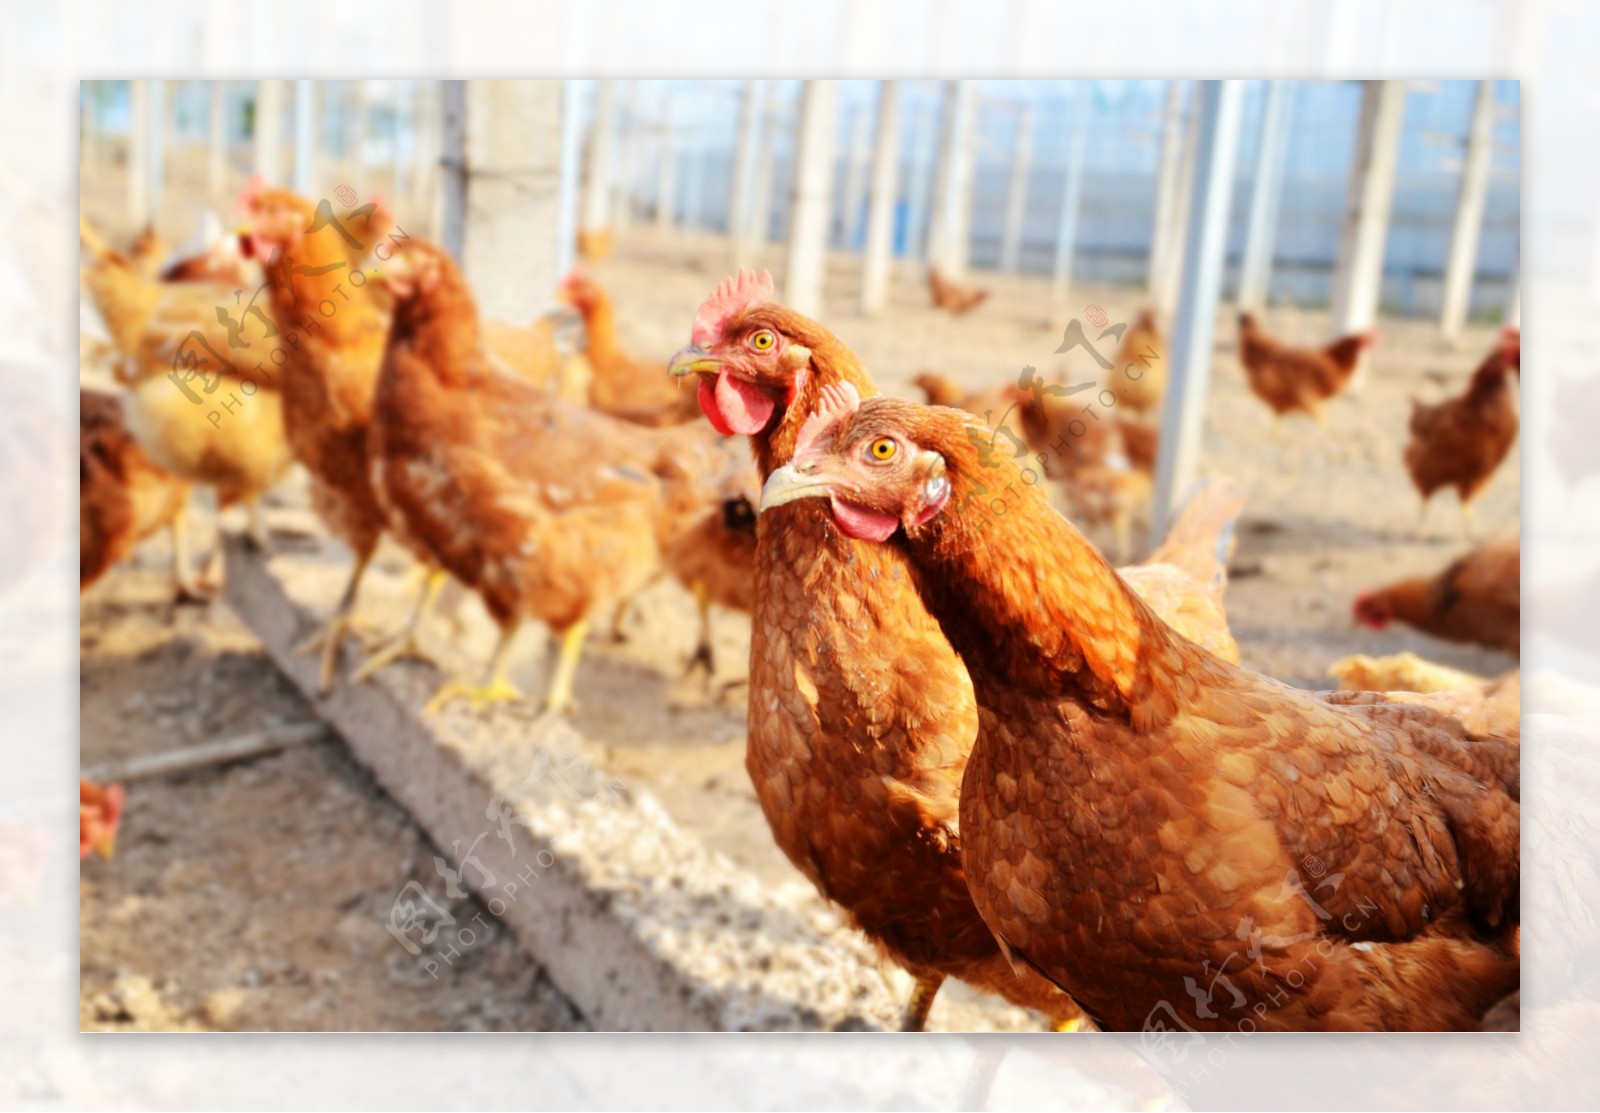 山林散养鸡的养殖方法 | 说明书网